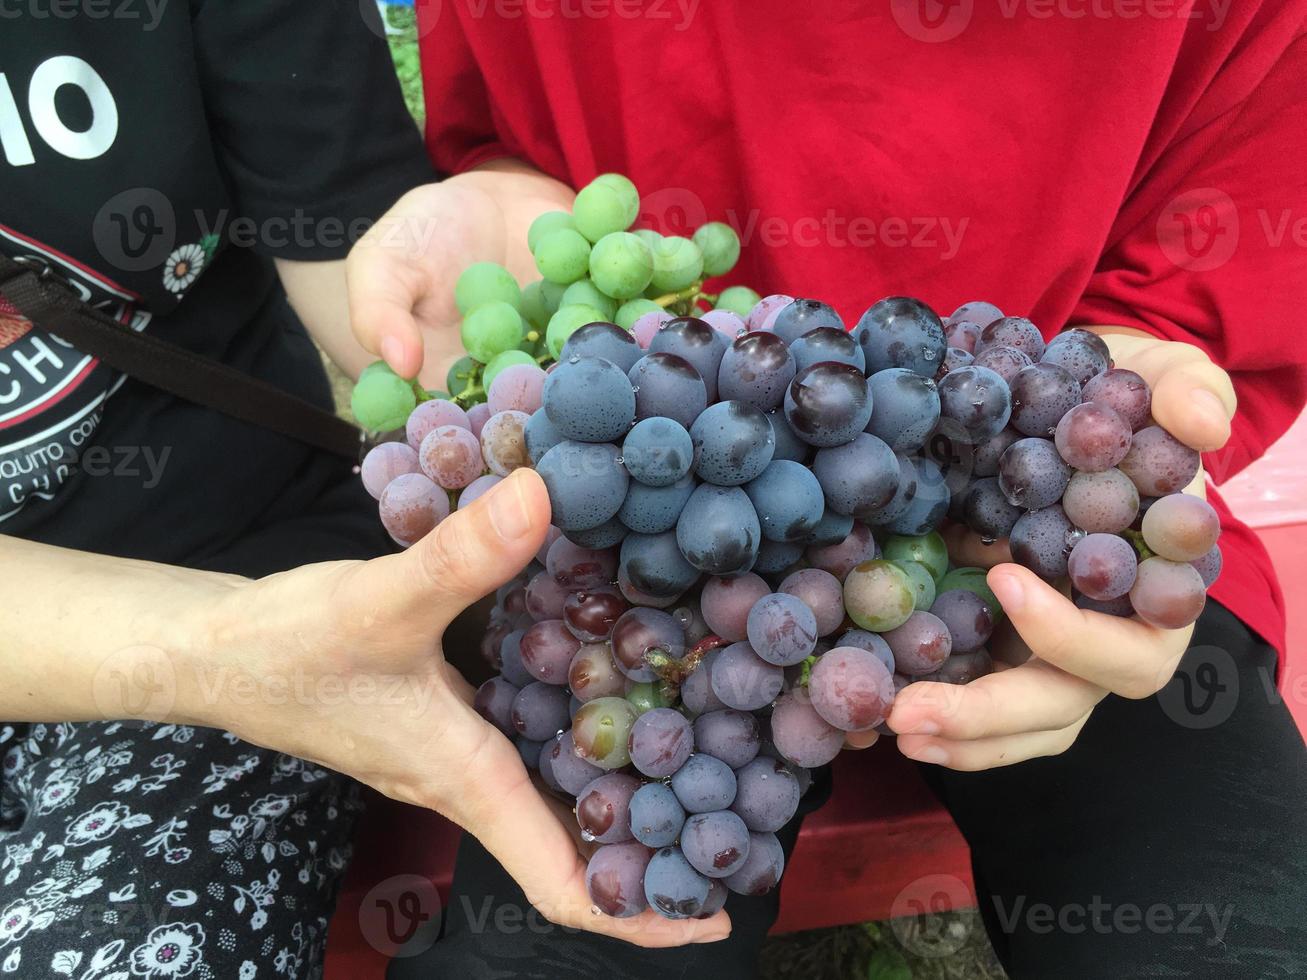 muitas uvas roxas em mãos humanas foto